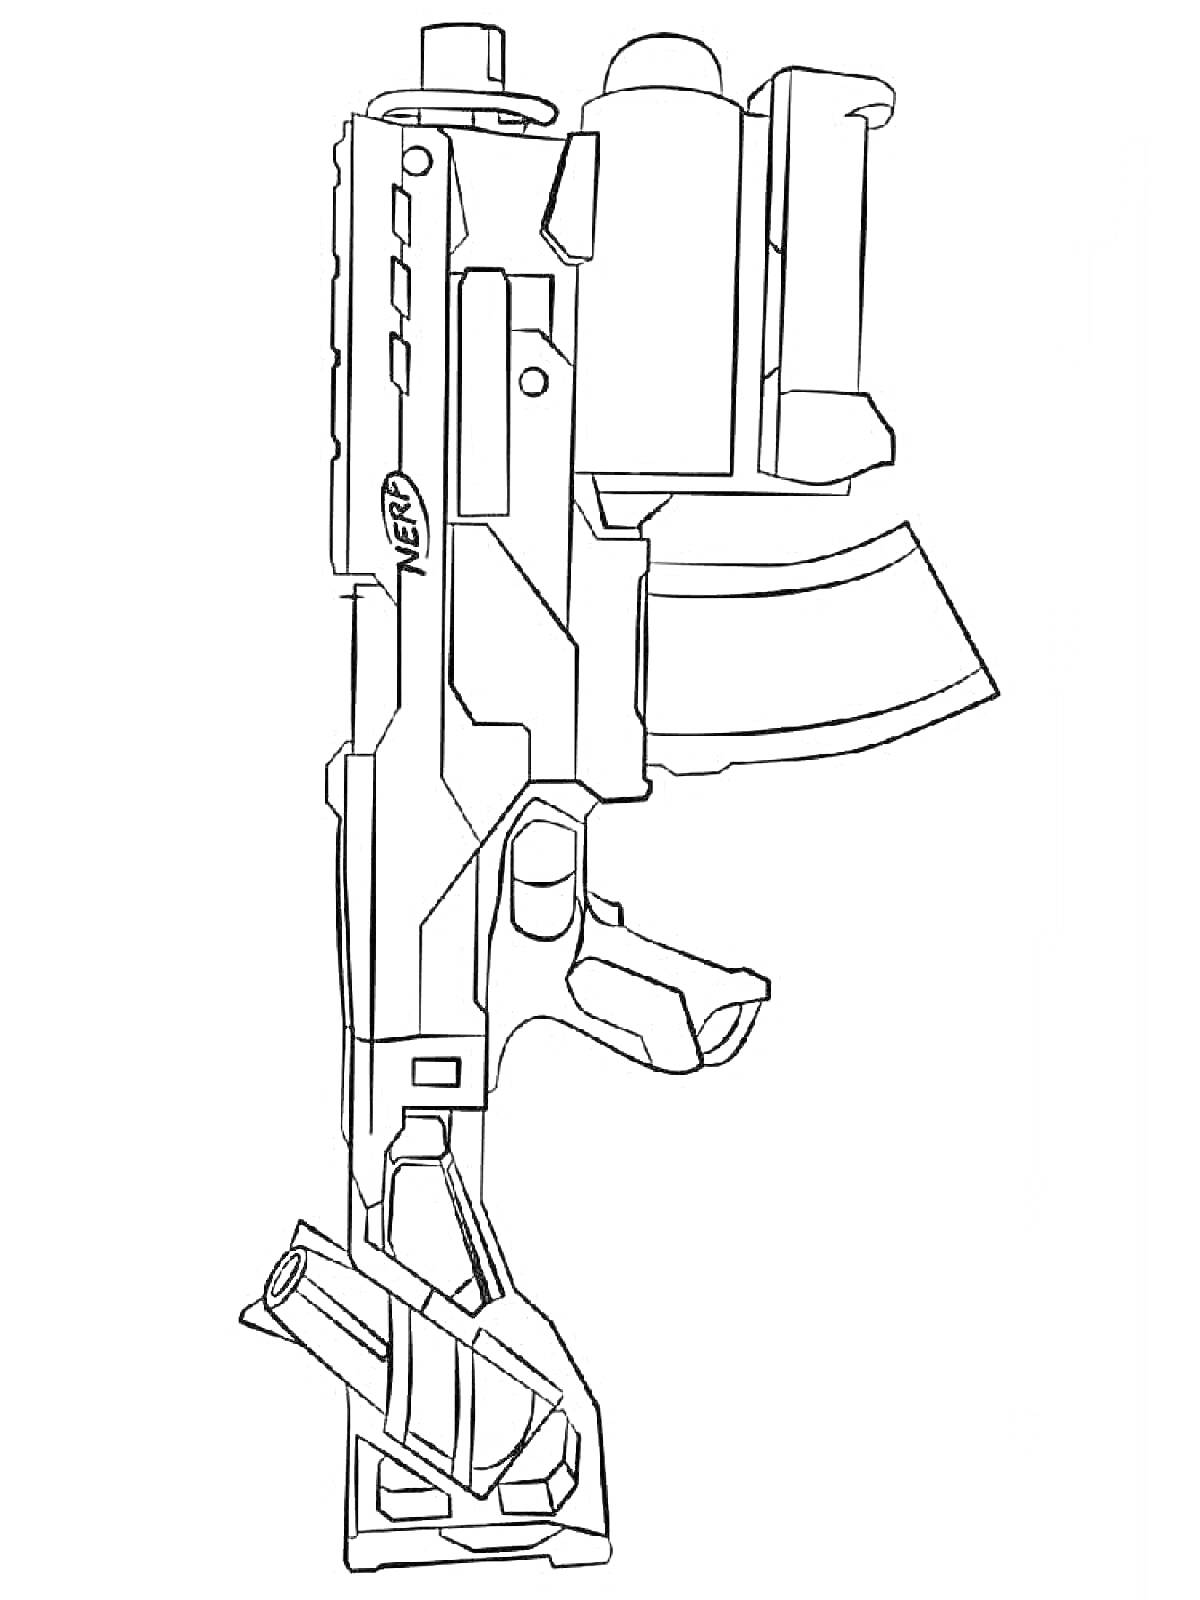 Раскраска Игрушечное ружье NERF с прицелом, магазином и передней рукояткой